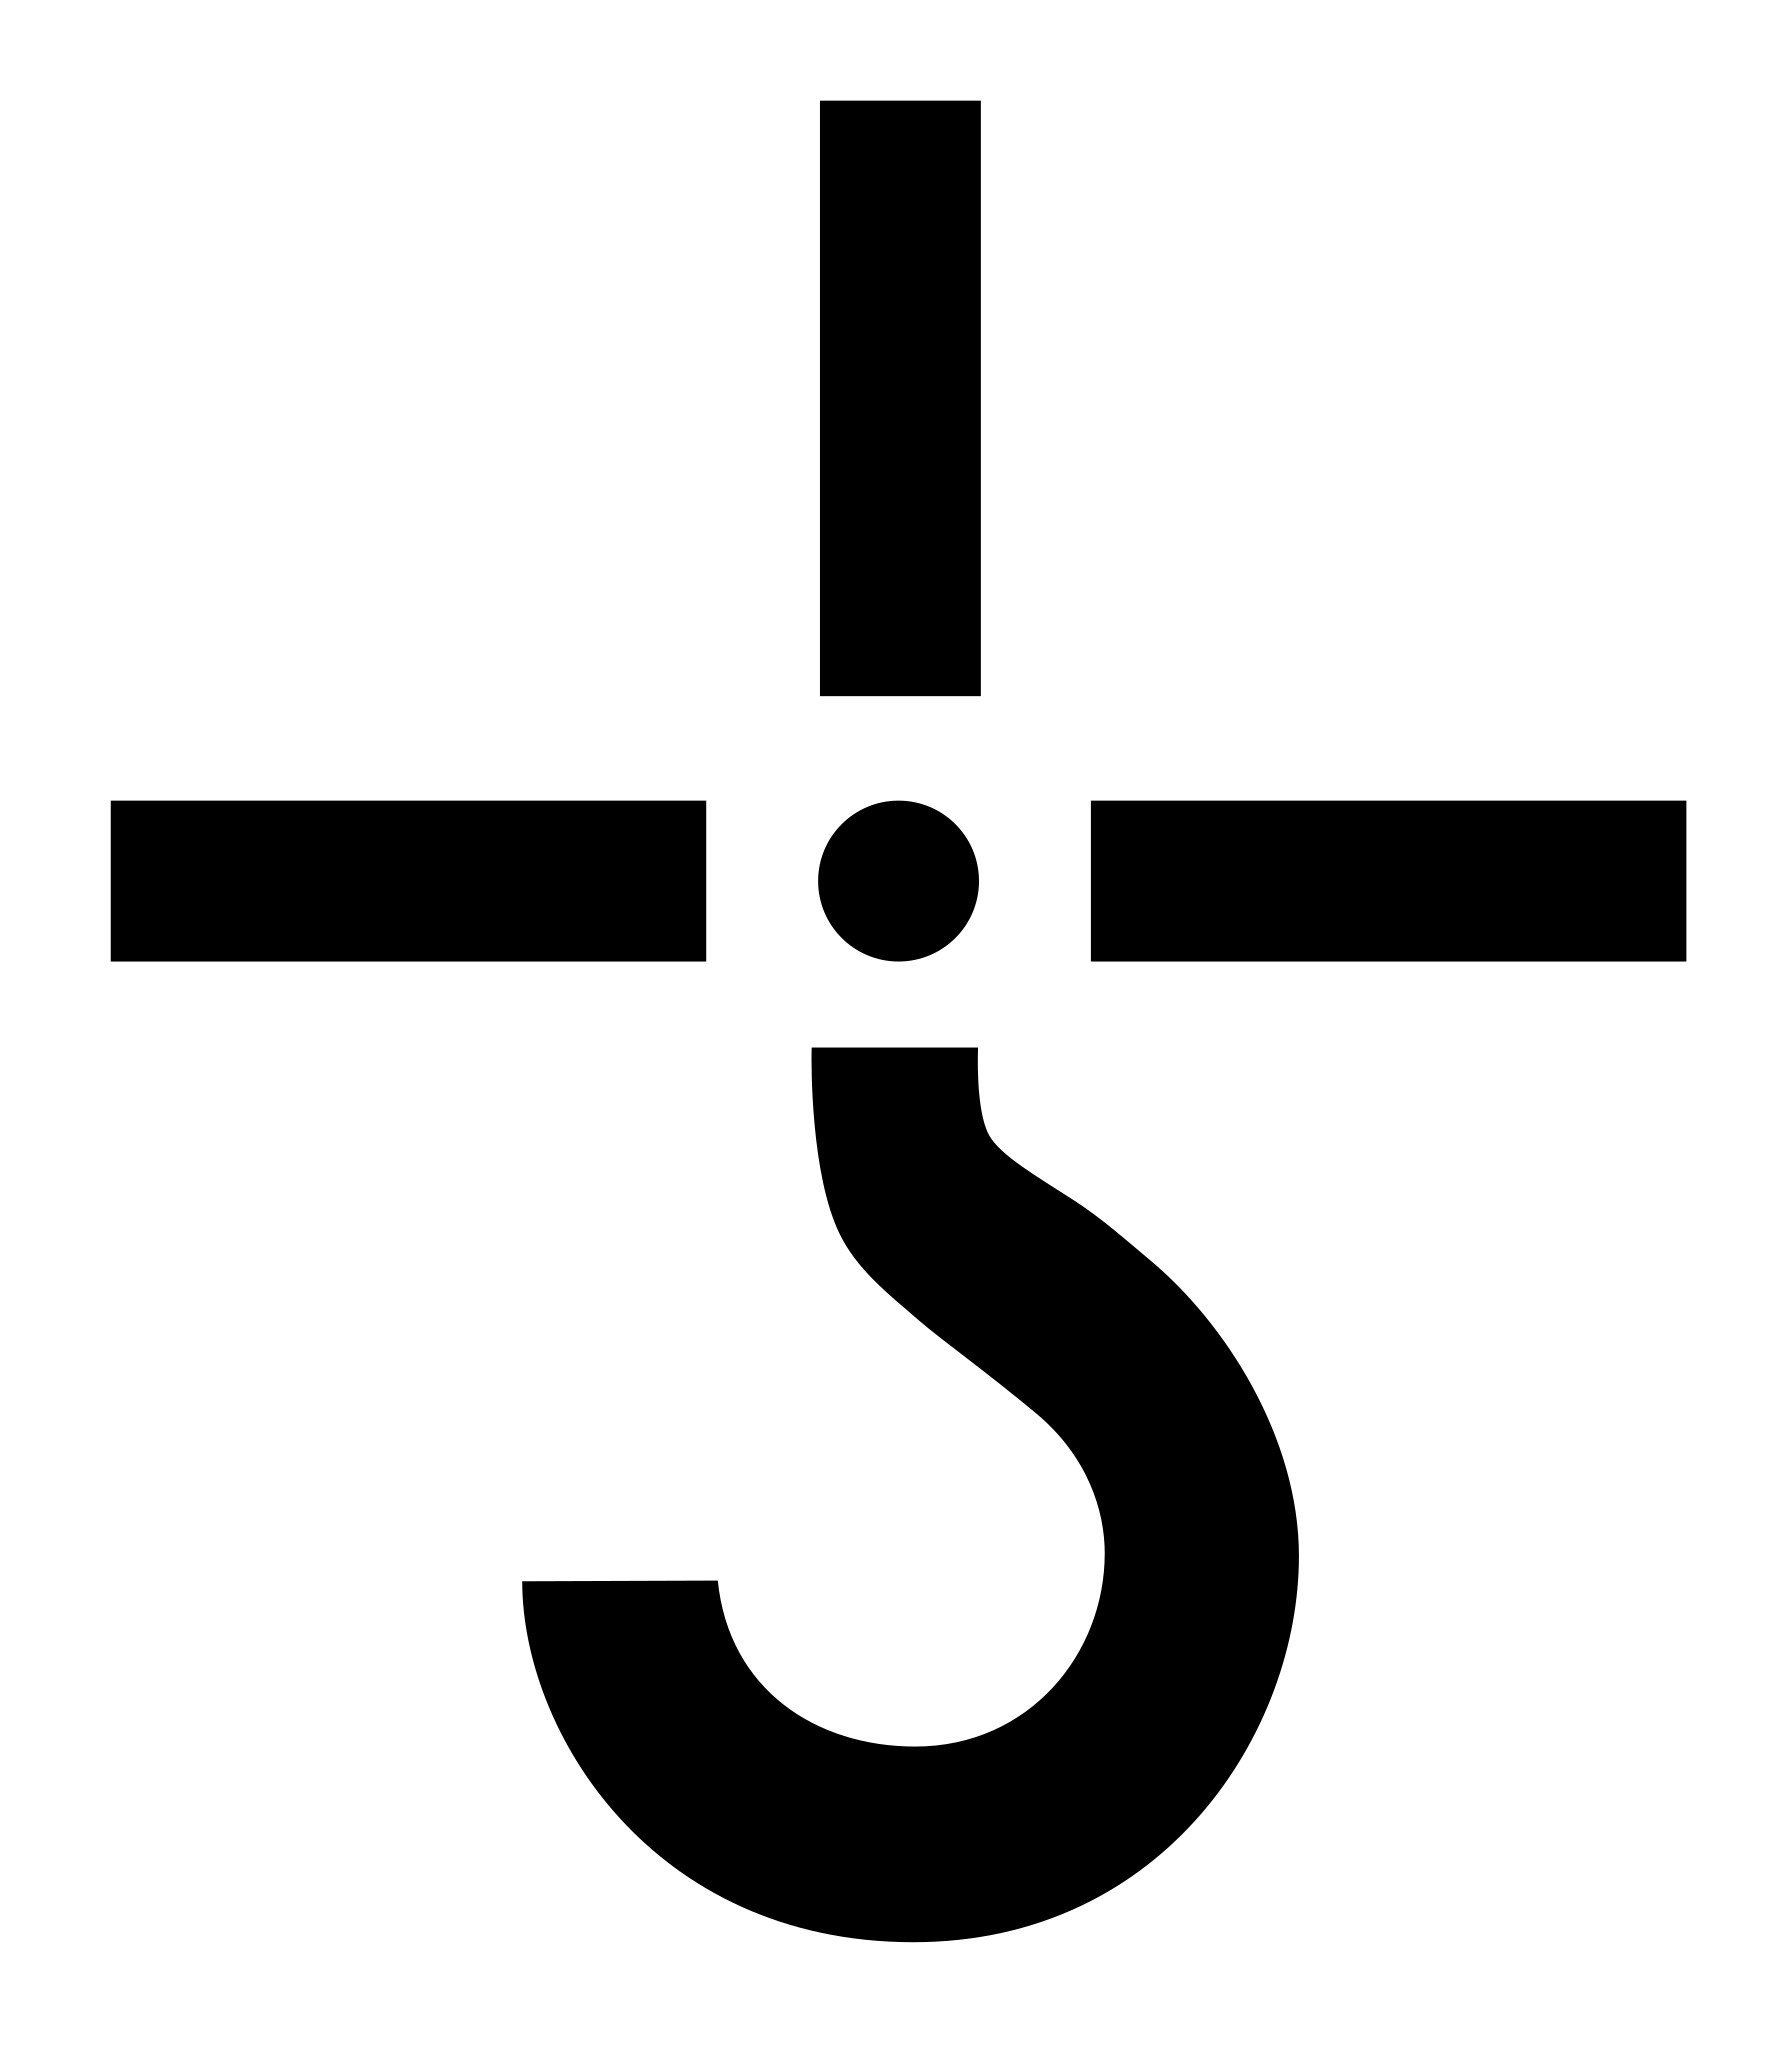 Символ снизу. Blue Oyster Cult логотип. Крест с крюком. Крест с вопросительным знаком внизу. Крест с крюком внизу символ.